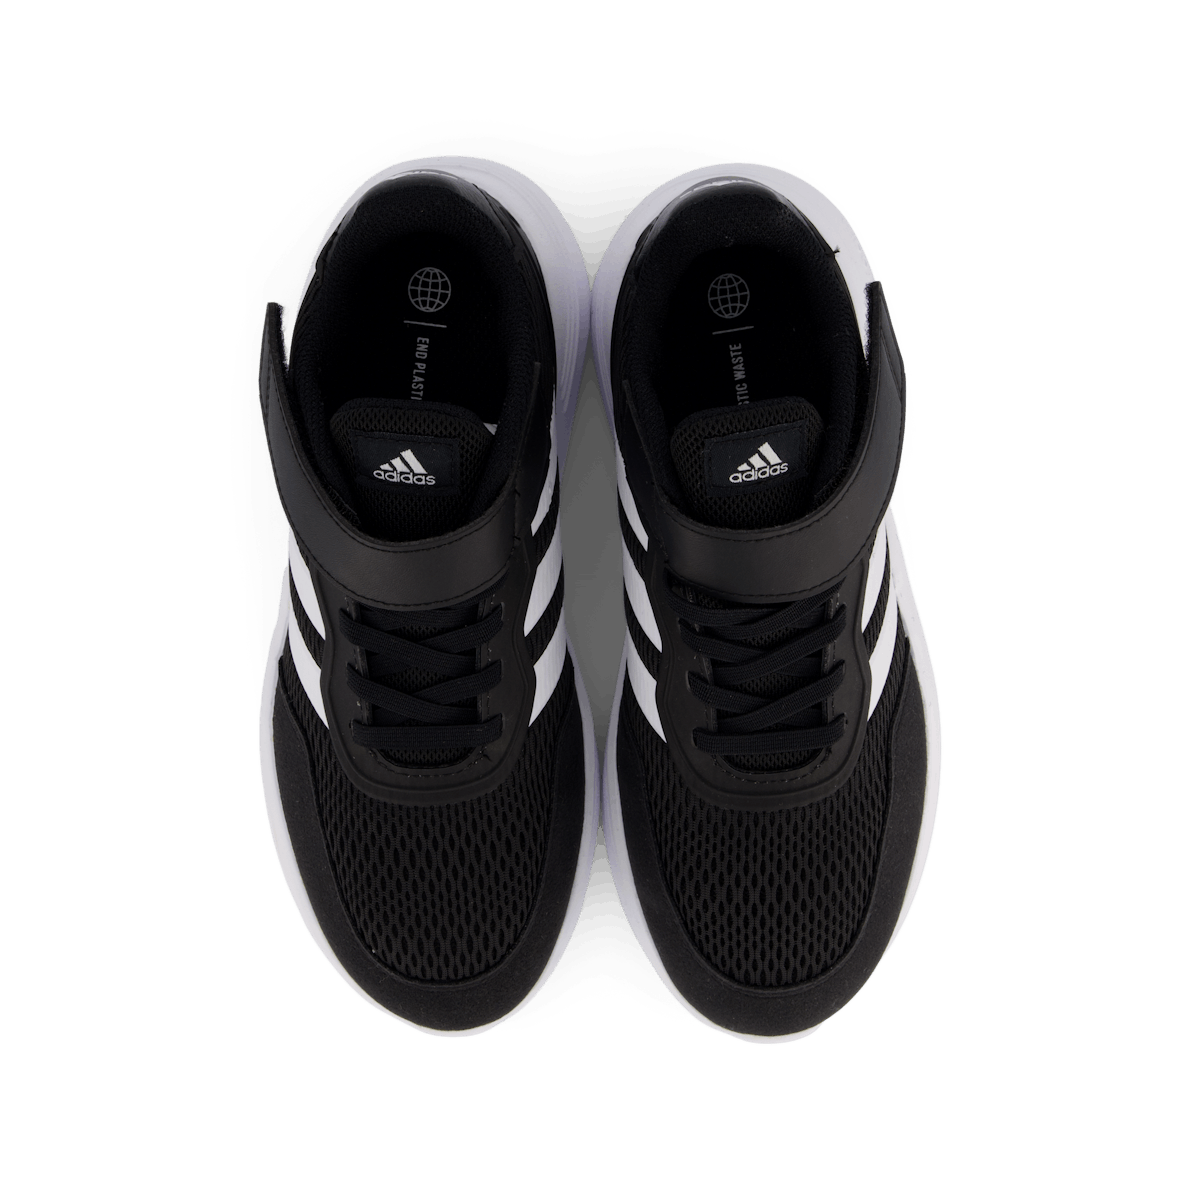 Nebzed Elastic Lace Top Strap Shoes Core Black / Cloud White / Cloud White